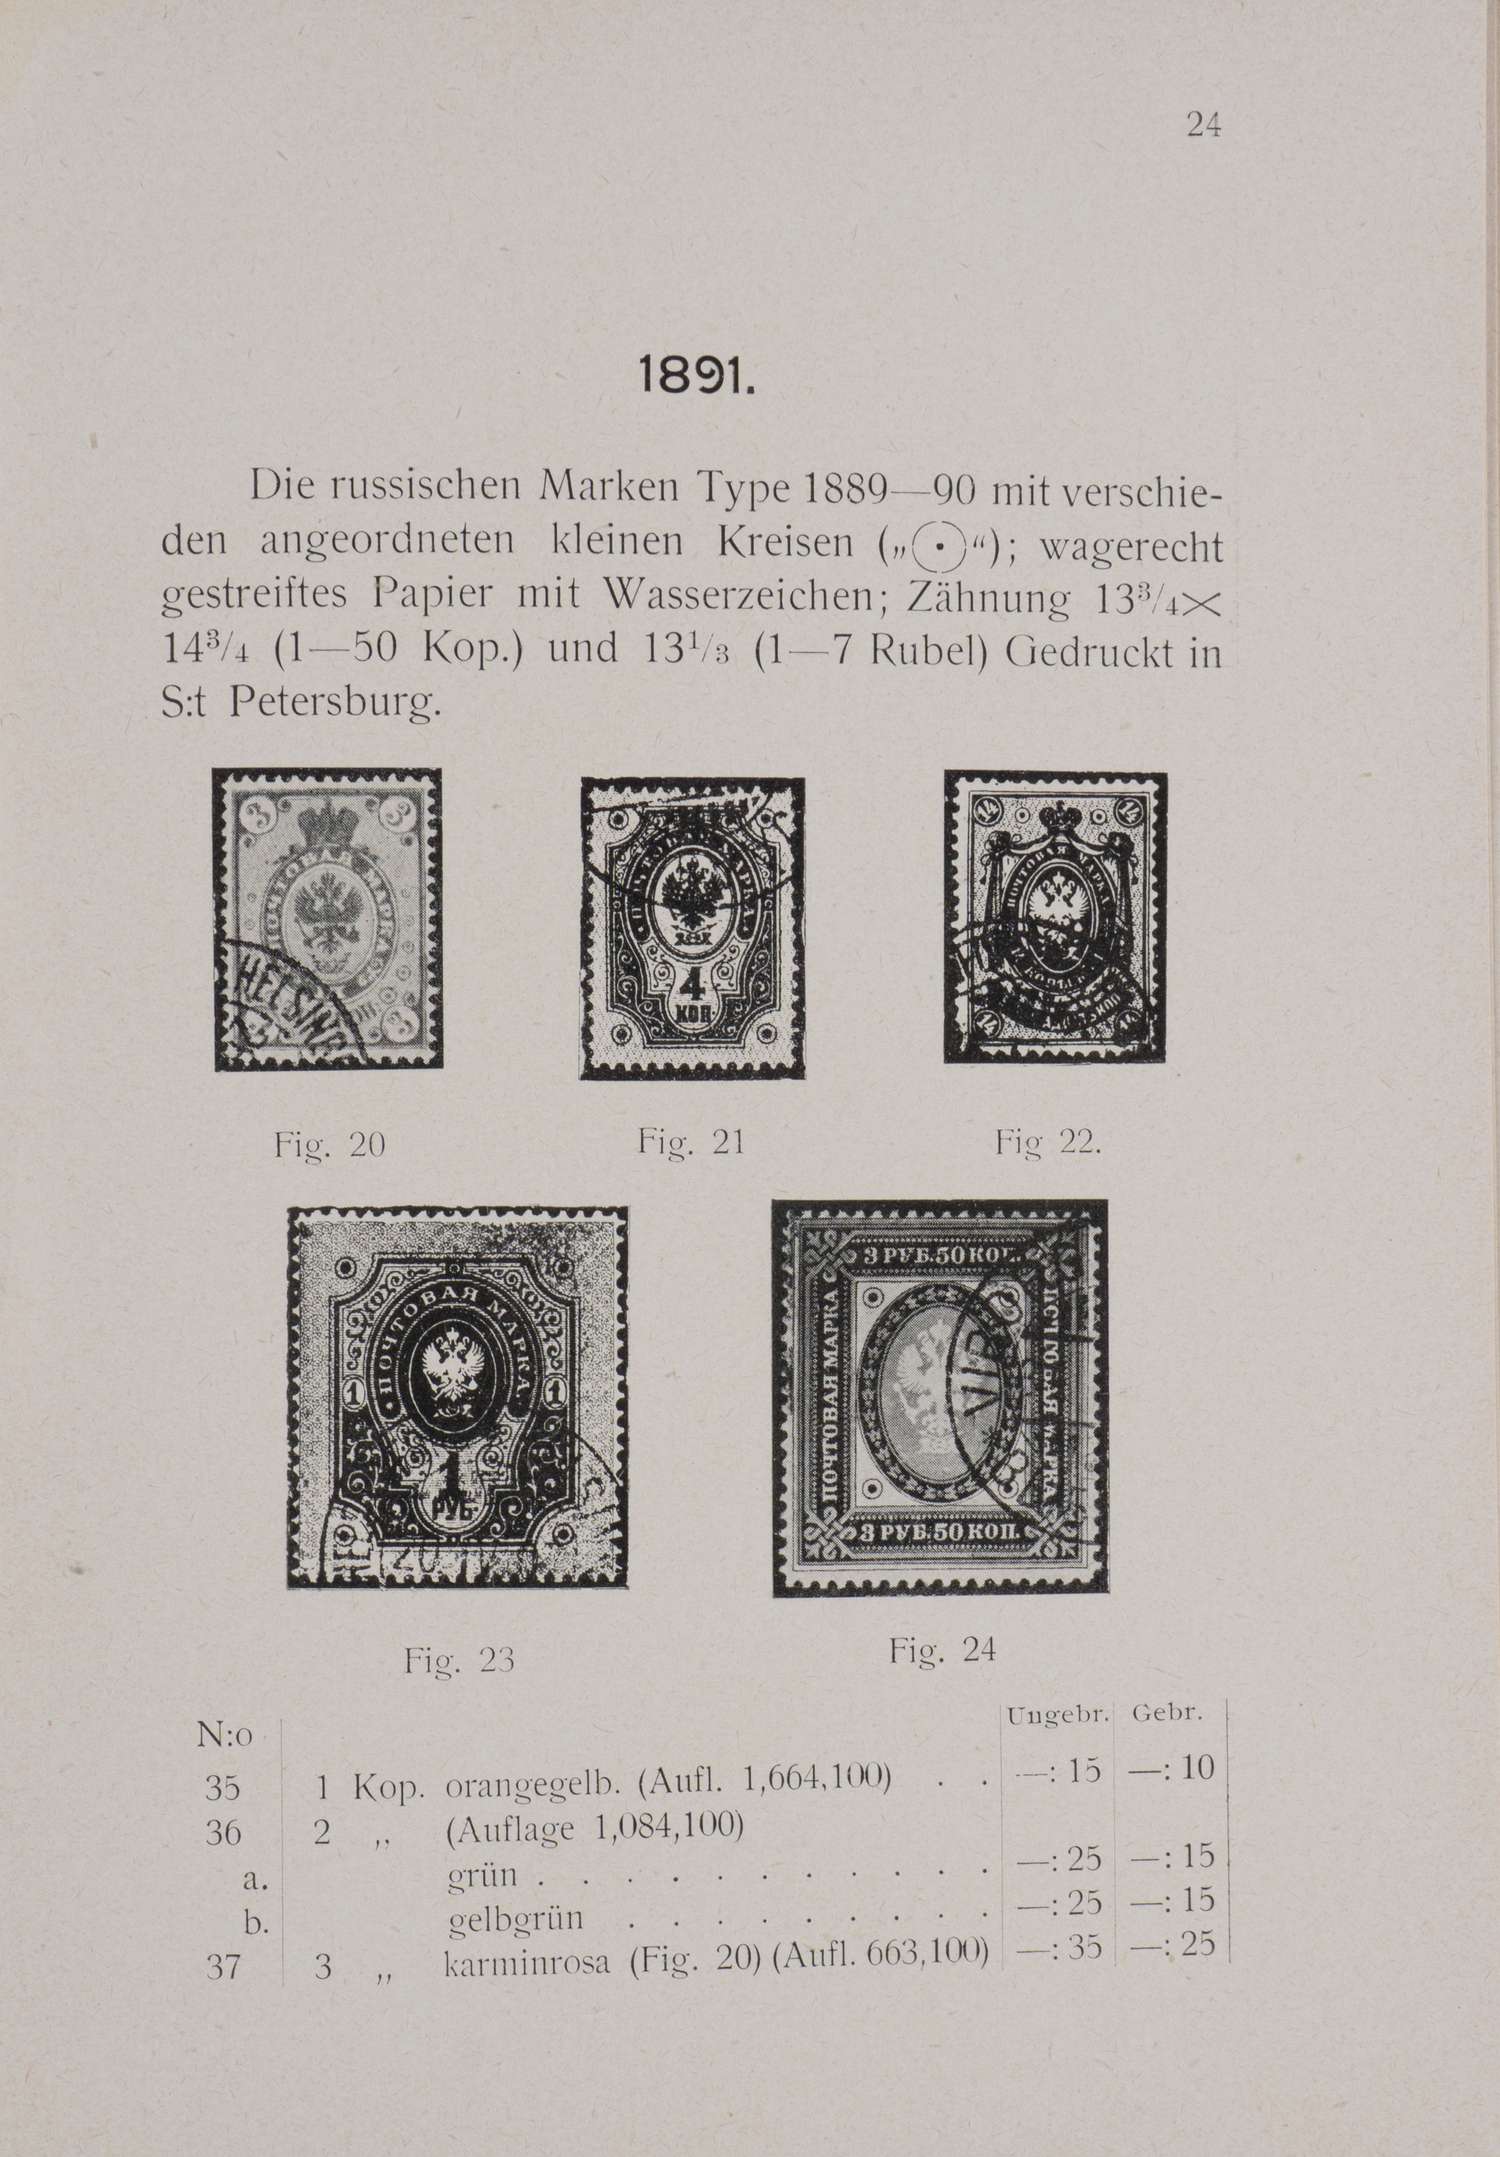 Каталог почтовых марок Великого княжества Финляндского (Выборг, 1908).